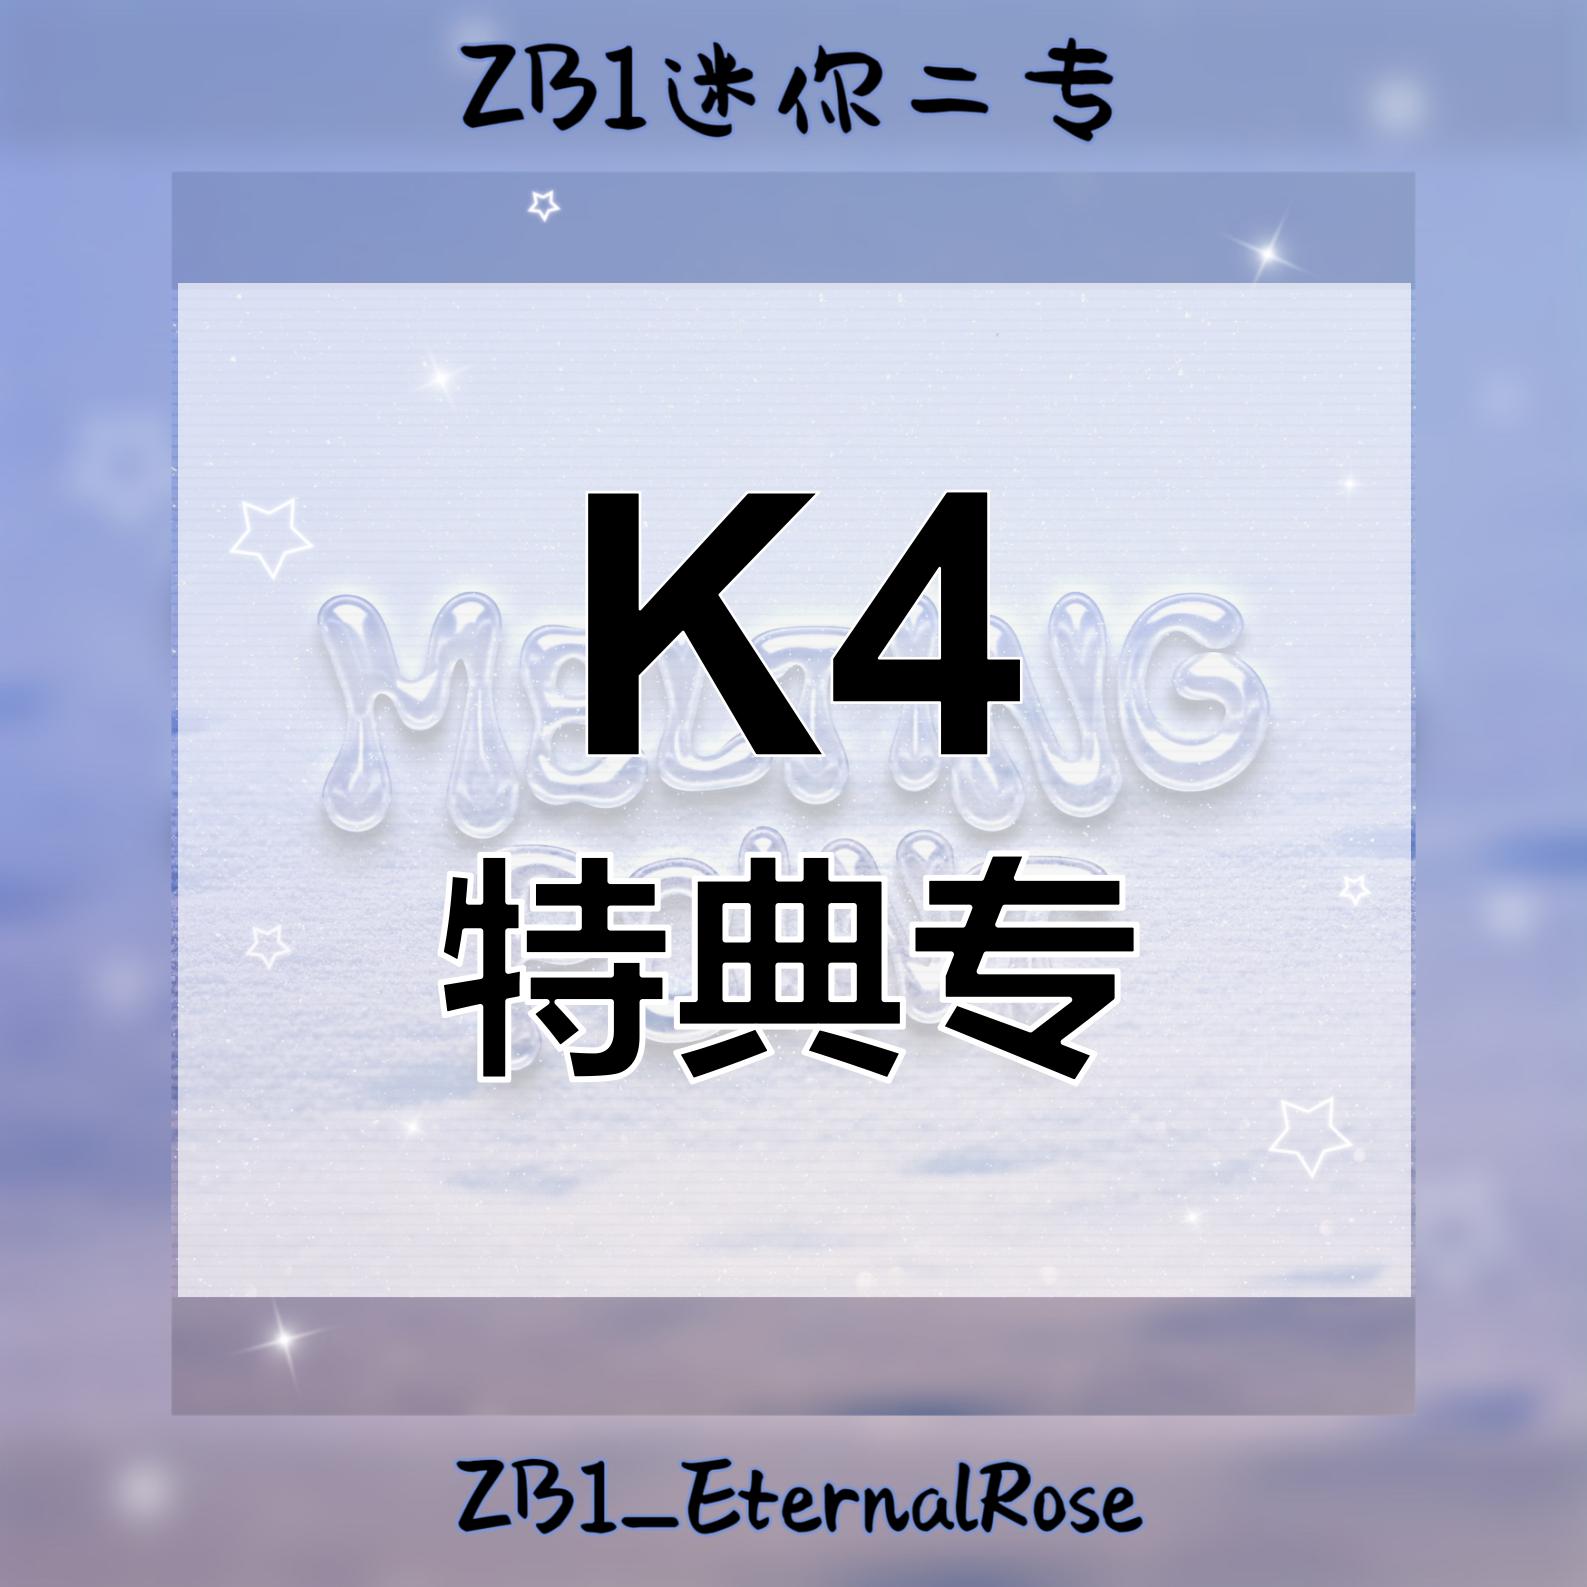 [全款 裸专] [Ktown4u Special Gift] ZEROBASEONE - The 2nd Mini Album [MELTING POINT] (Random Ver.)_ZB1_EternalRose